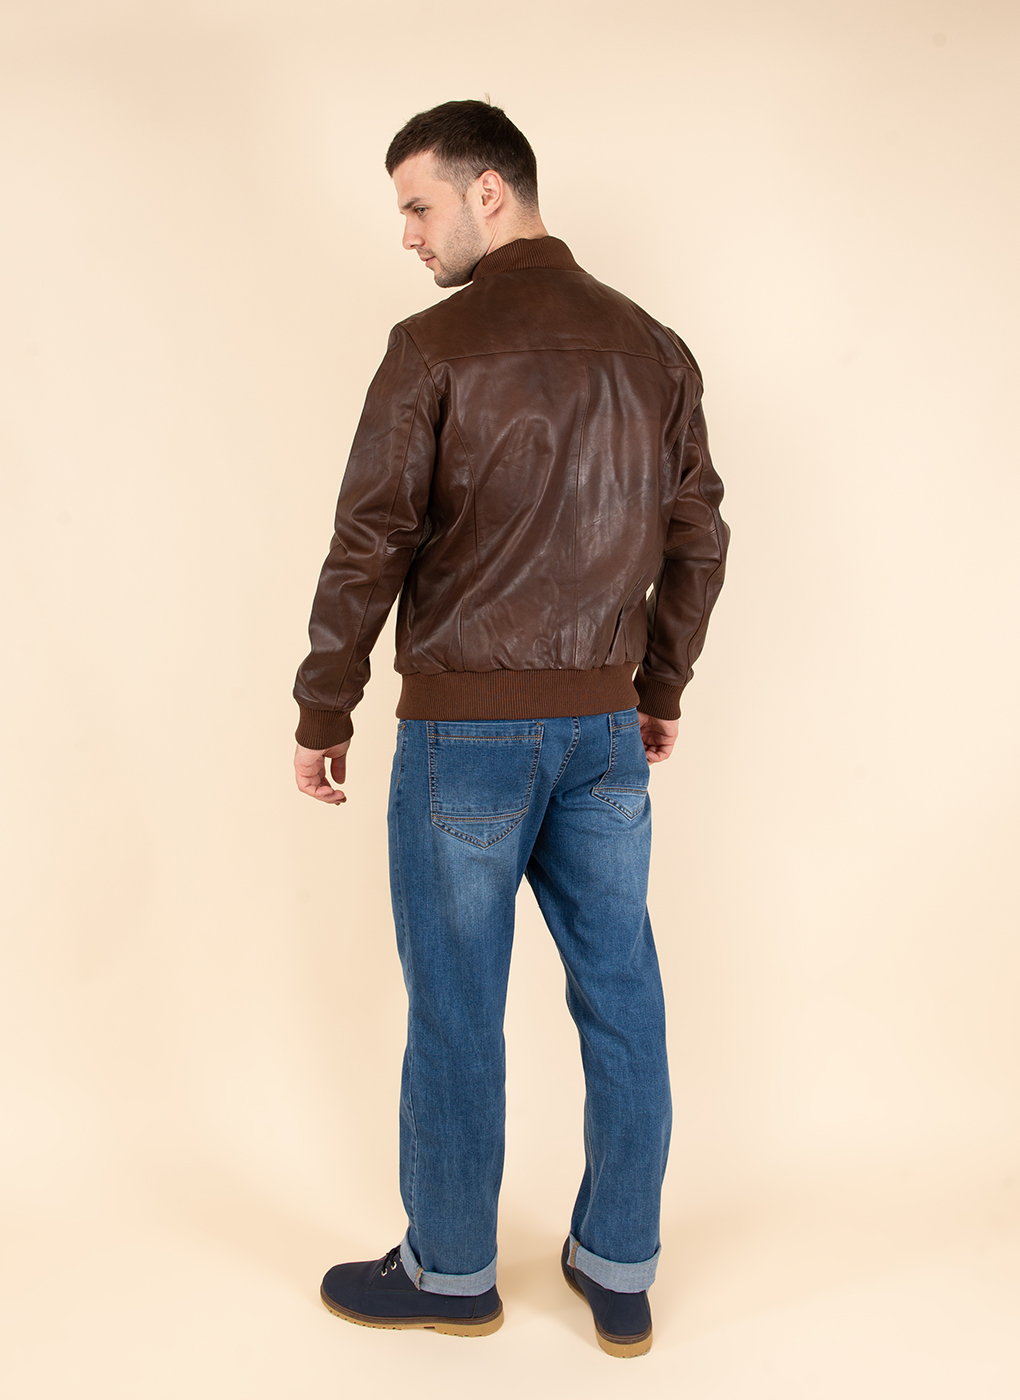 Кожаная куртка мужская Каляев 45226 коричневая 56 RU